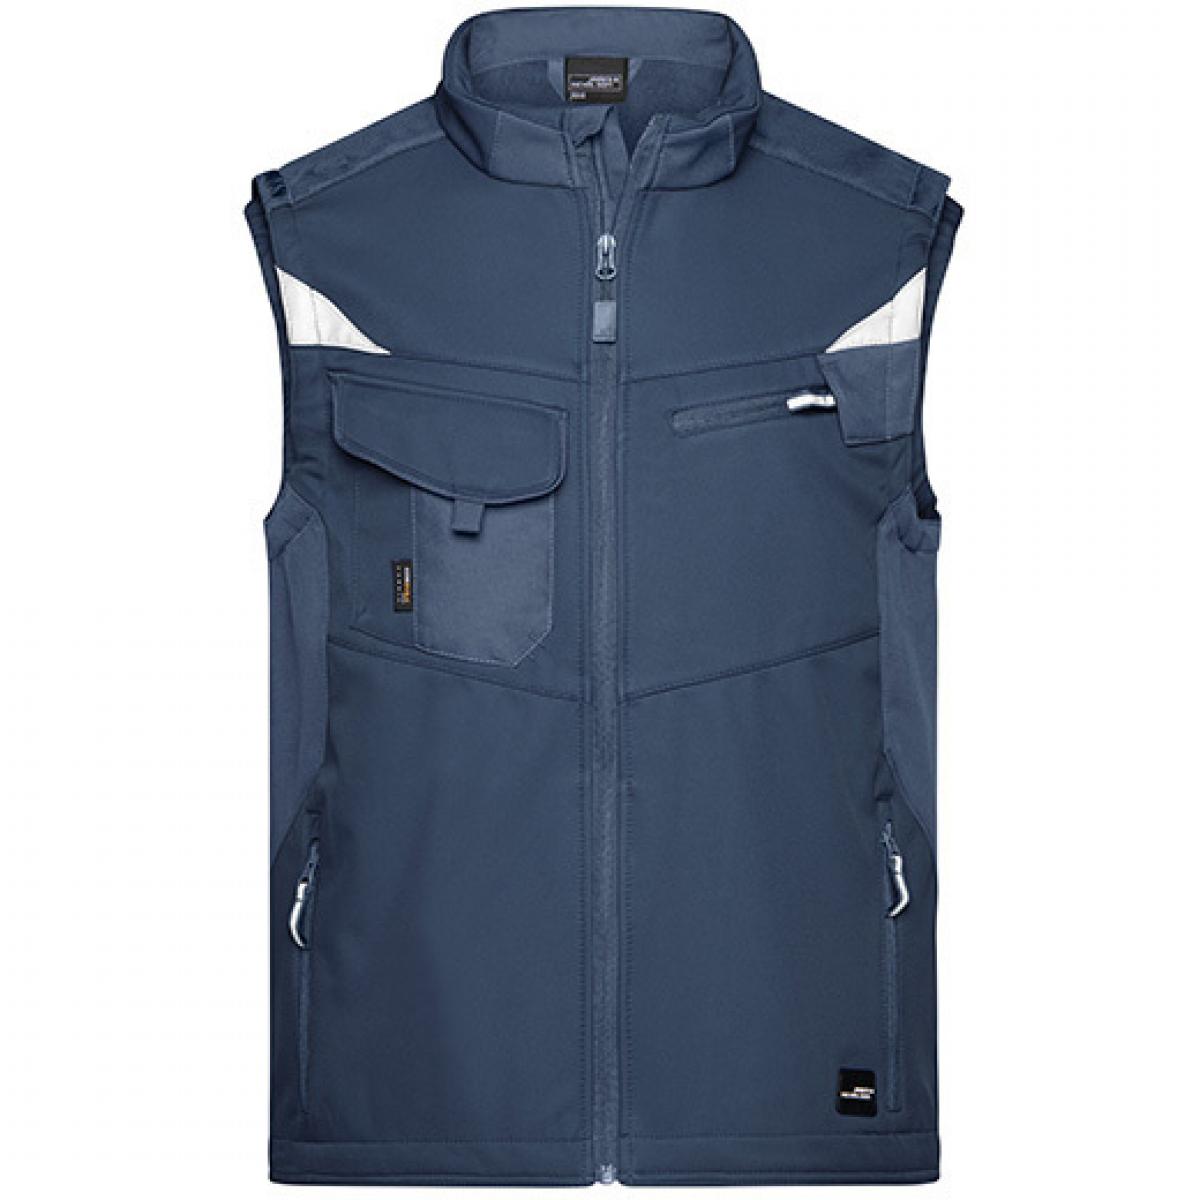 Hersteller: James+Nicholson Herstellernummer: JN845 Artikelbezeichnung: Herren Jacke, Workwear Softshell Vest -STRONG- Farbe: Navy/Navy